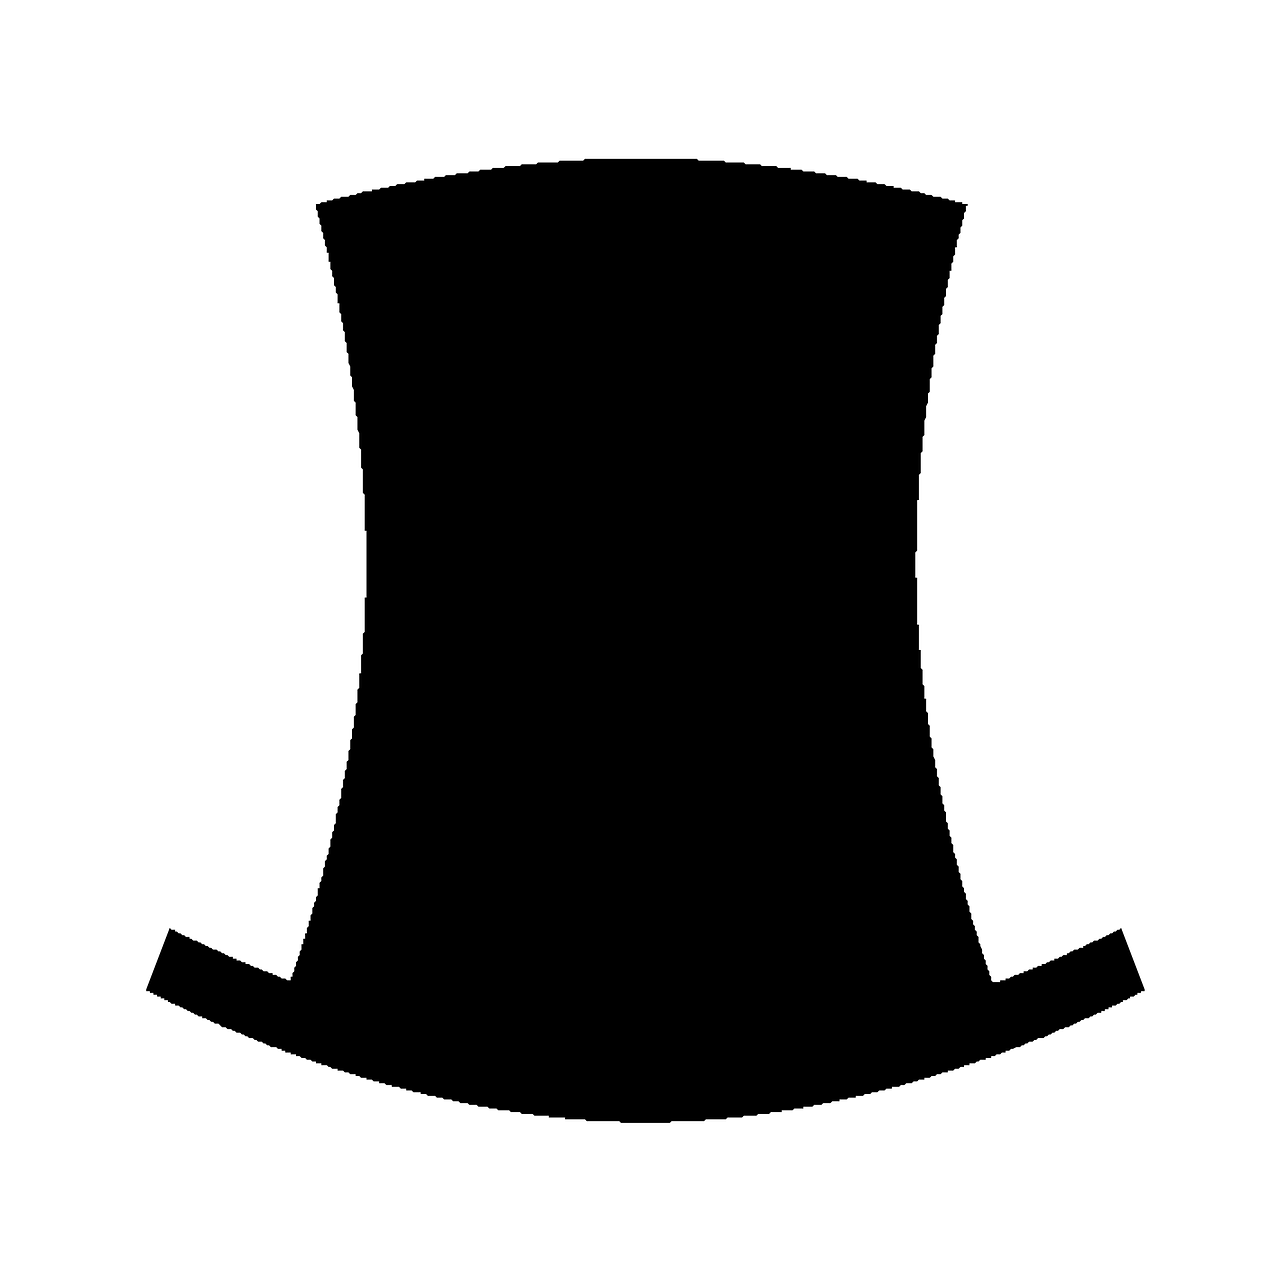 black hat clothing free photo